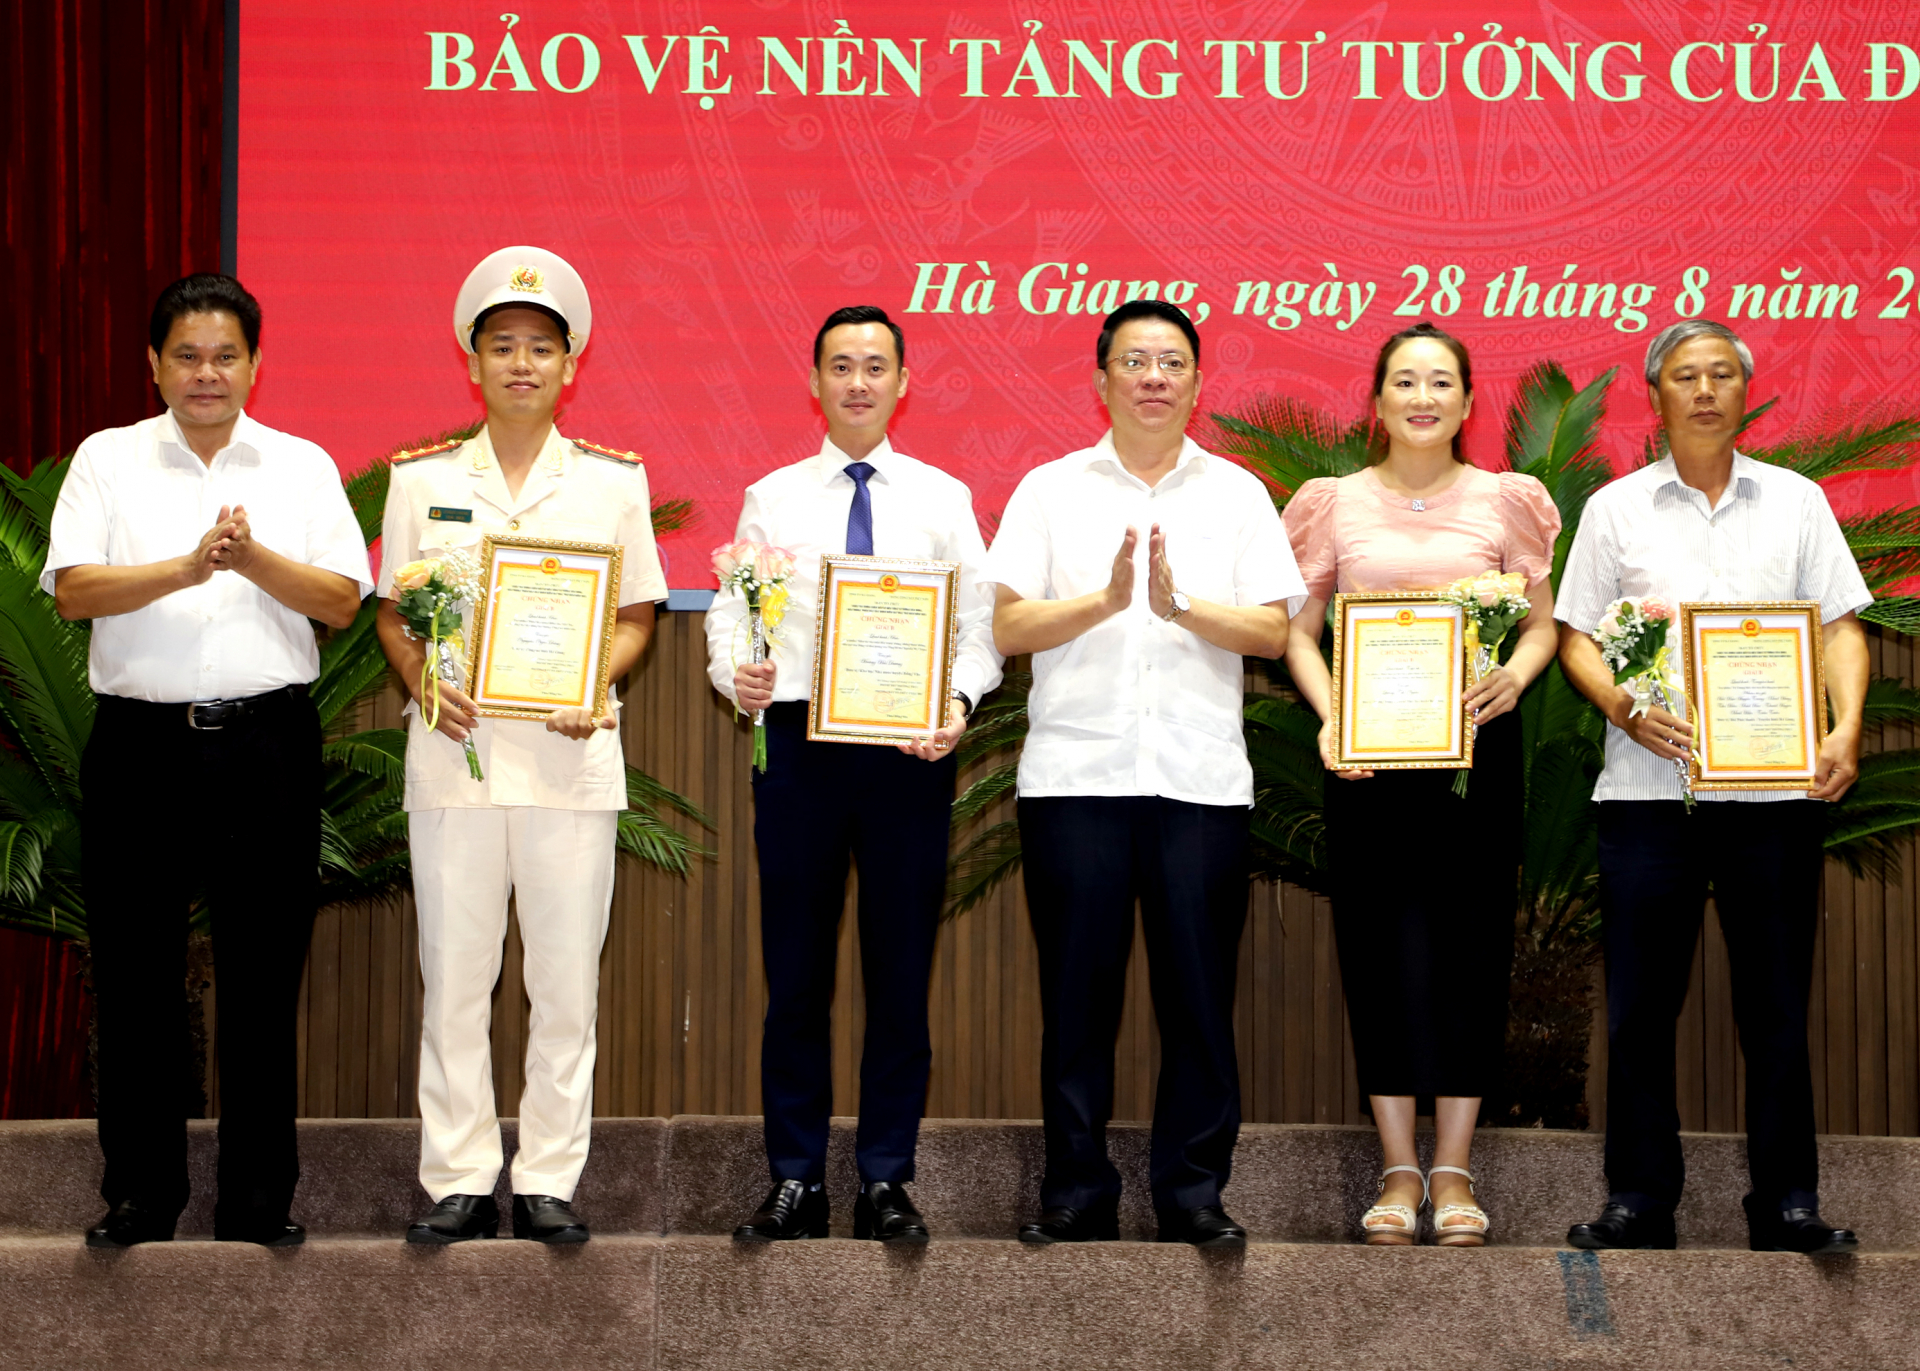 Chủ tịch Ủy ban MTTQ tỉnh Vàng Seo Cón và Trưởng ban Dân vận Tỉnh ủy Trần Mạnh Lợi trao giải B cuộc thi Chính luận cho các tác giả, nhóm tác giả.